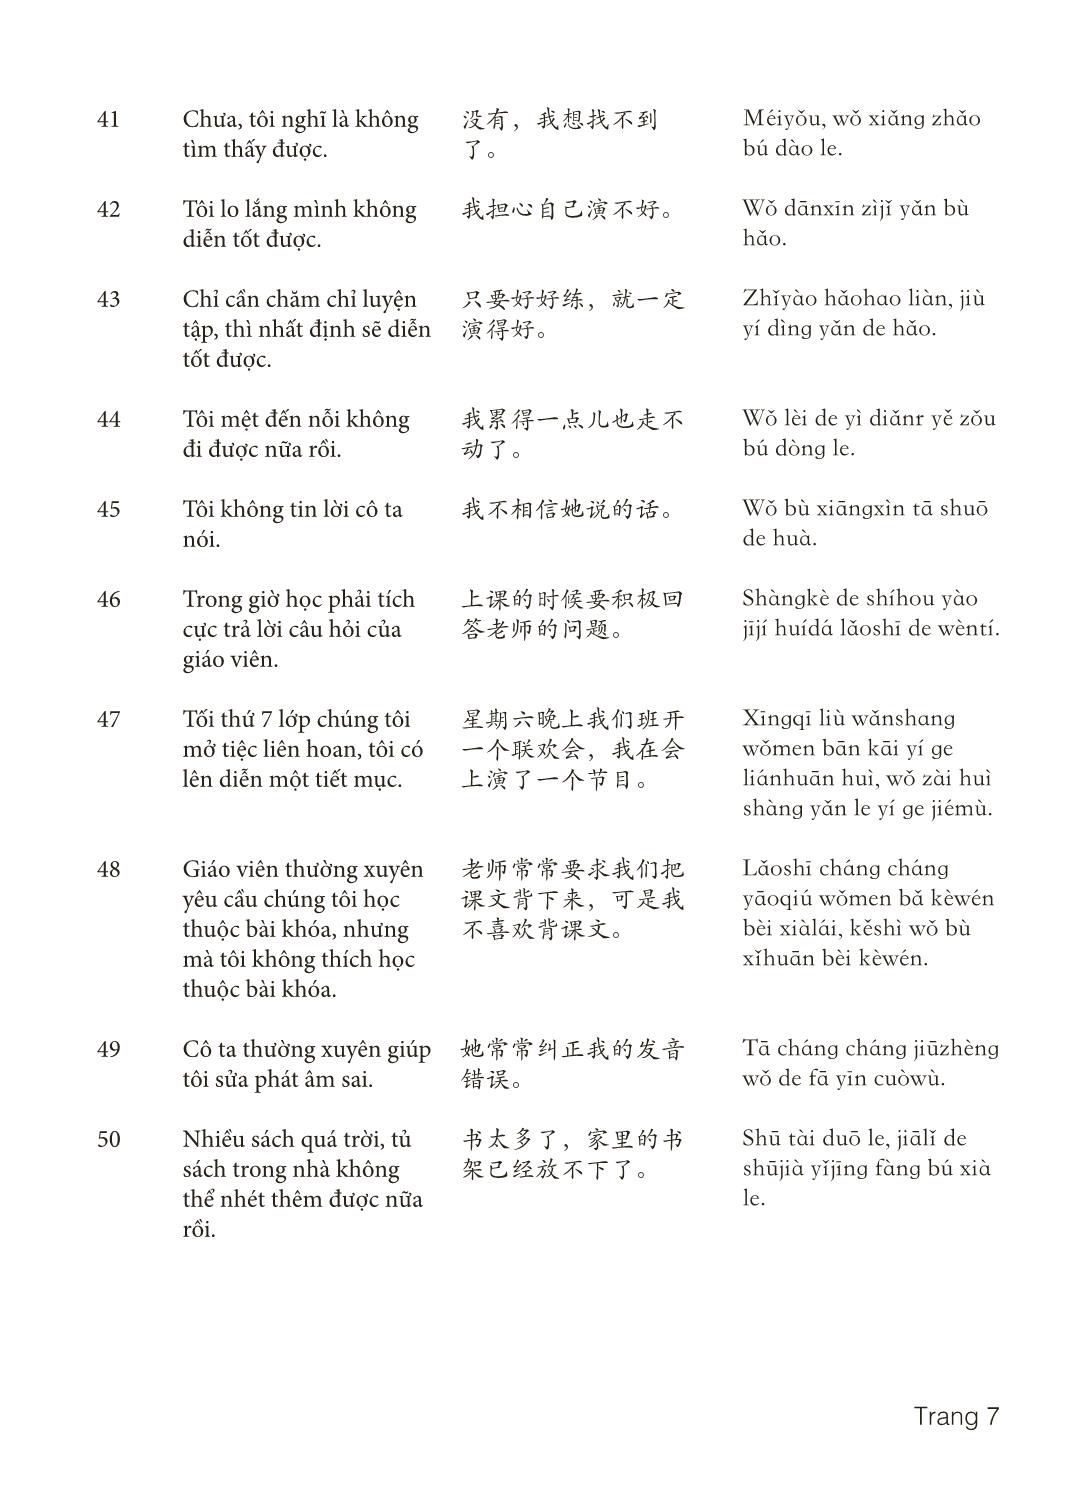 3000 Câu đàm thoại tiếng Hoa - Phần 25 trang 7